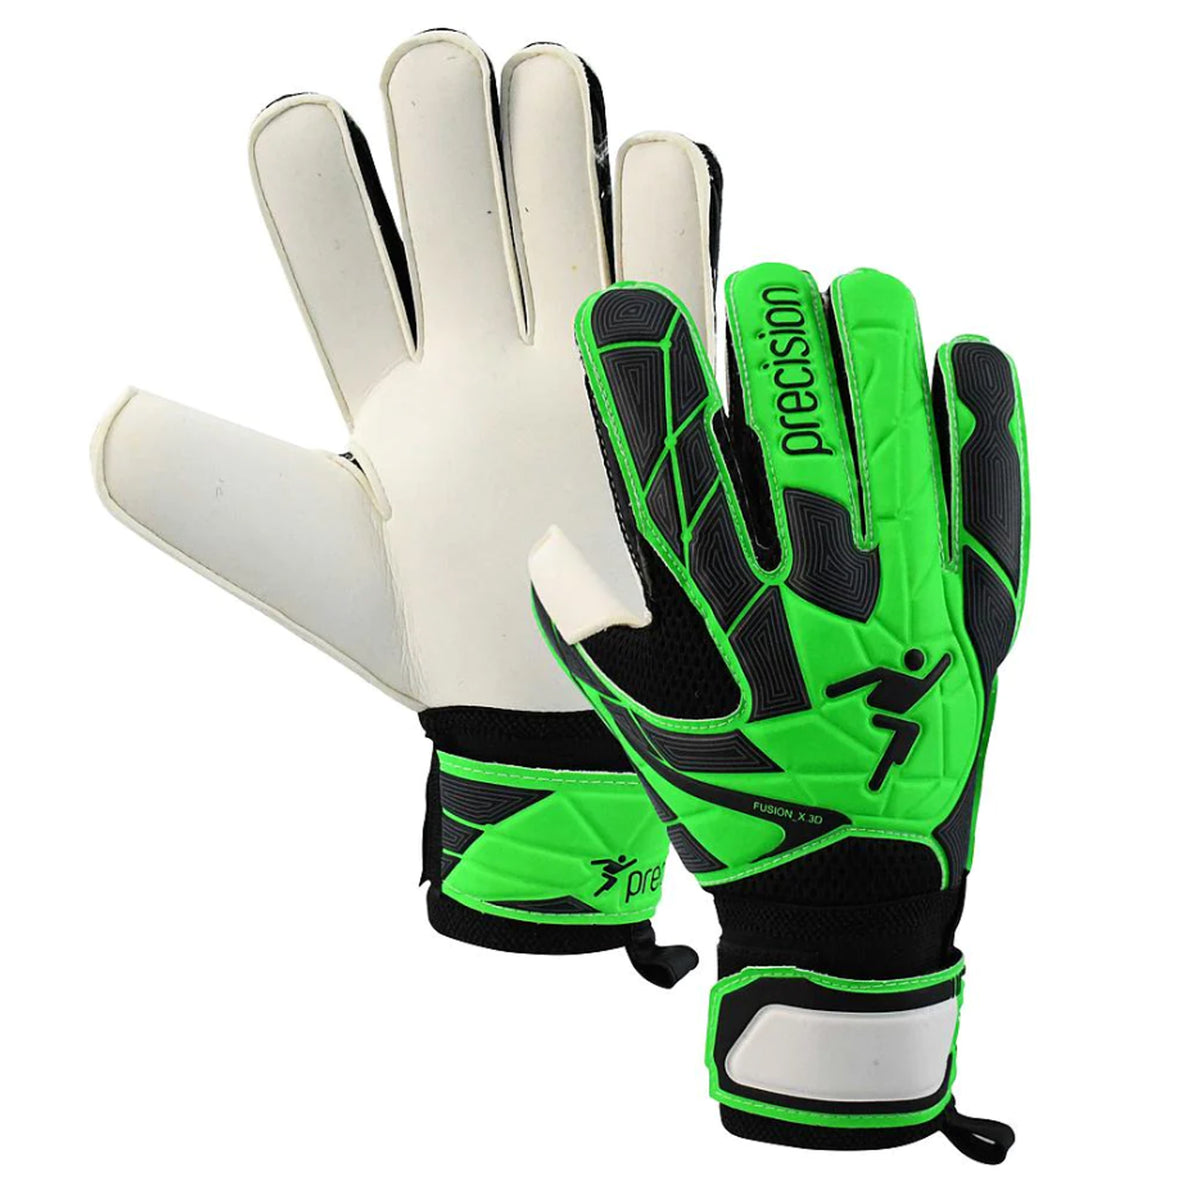 GK Gloves Prec Fusion X.3d Flat Cut Protect